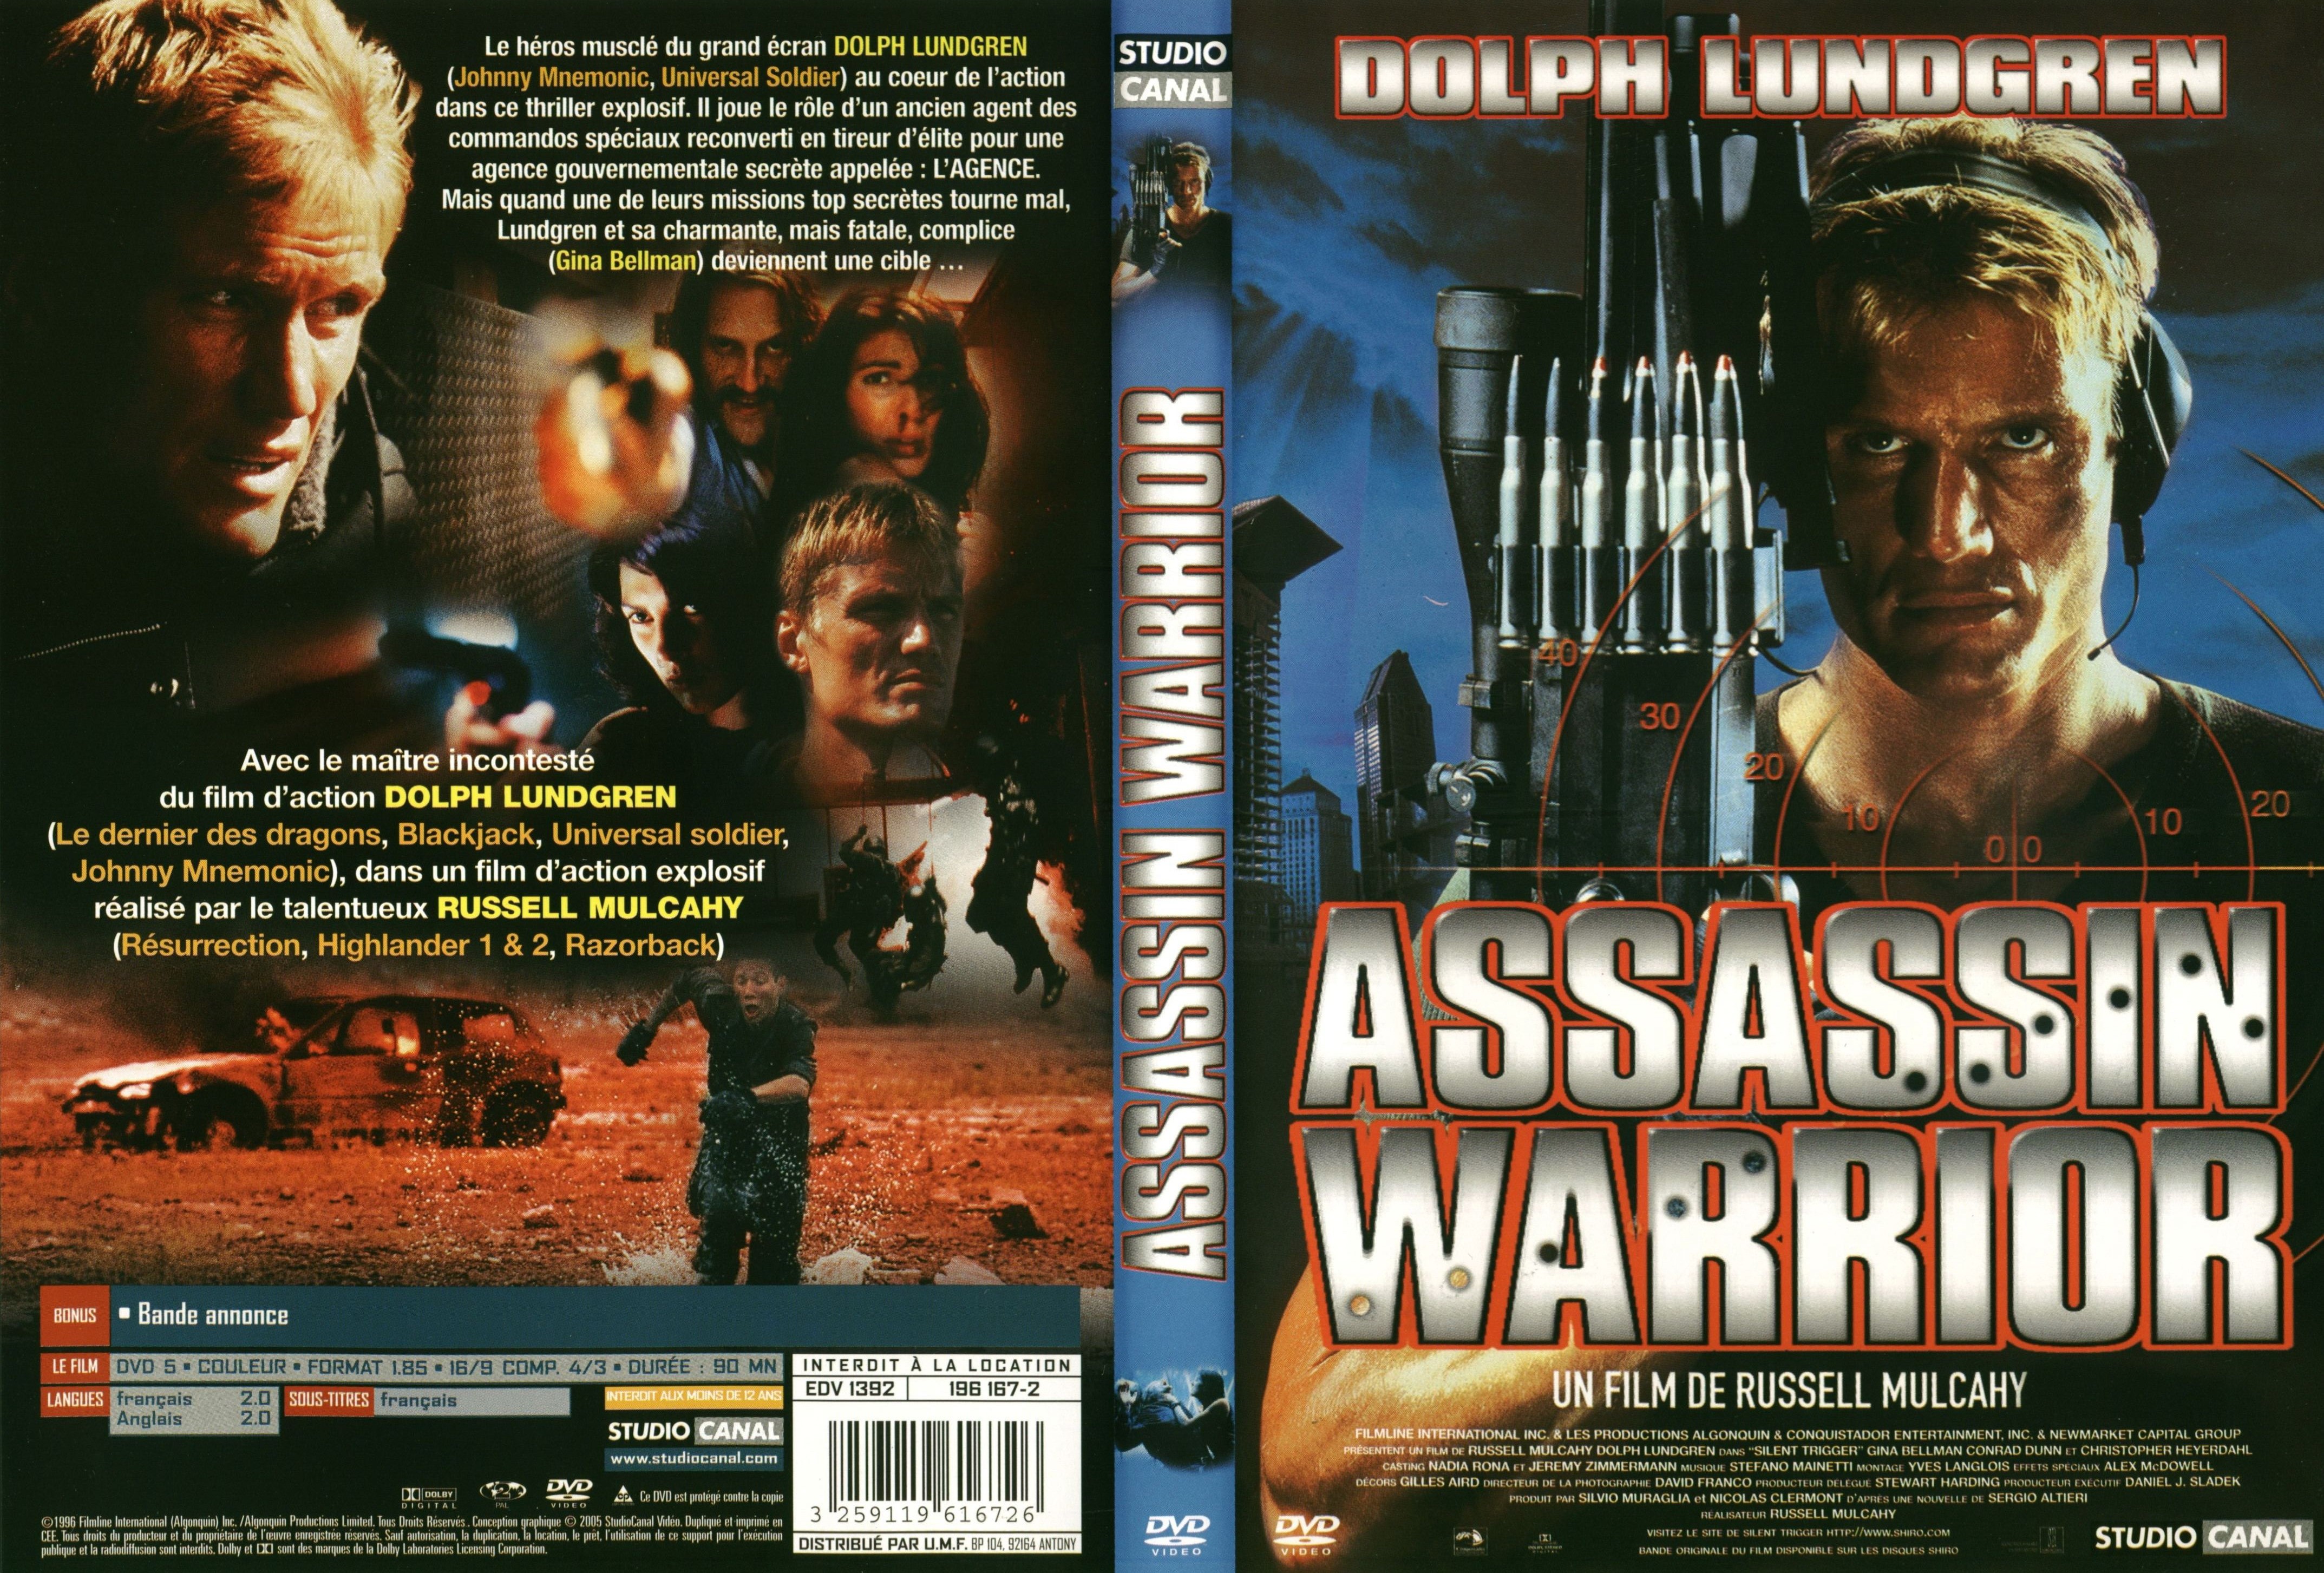 Jaquette DVD Assassin warrior